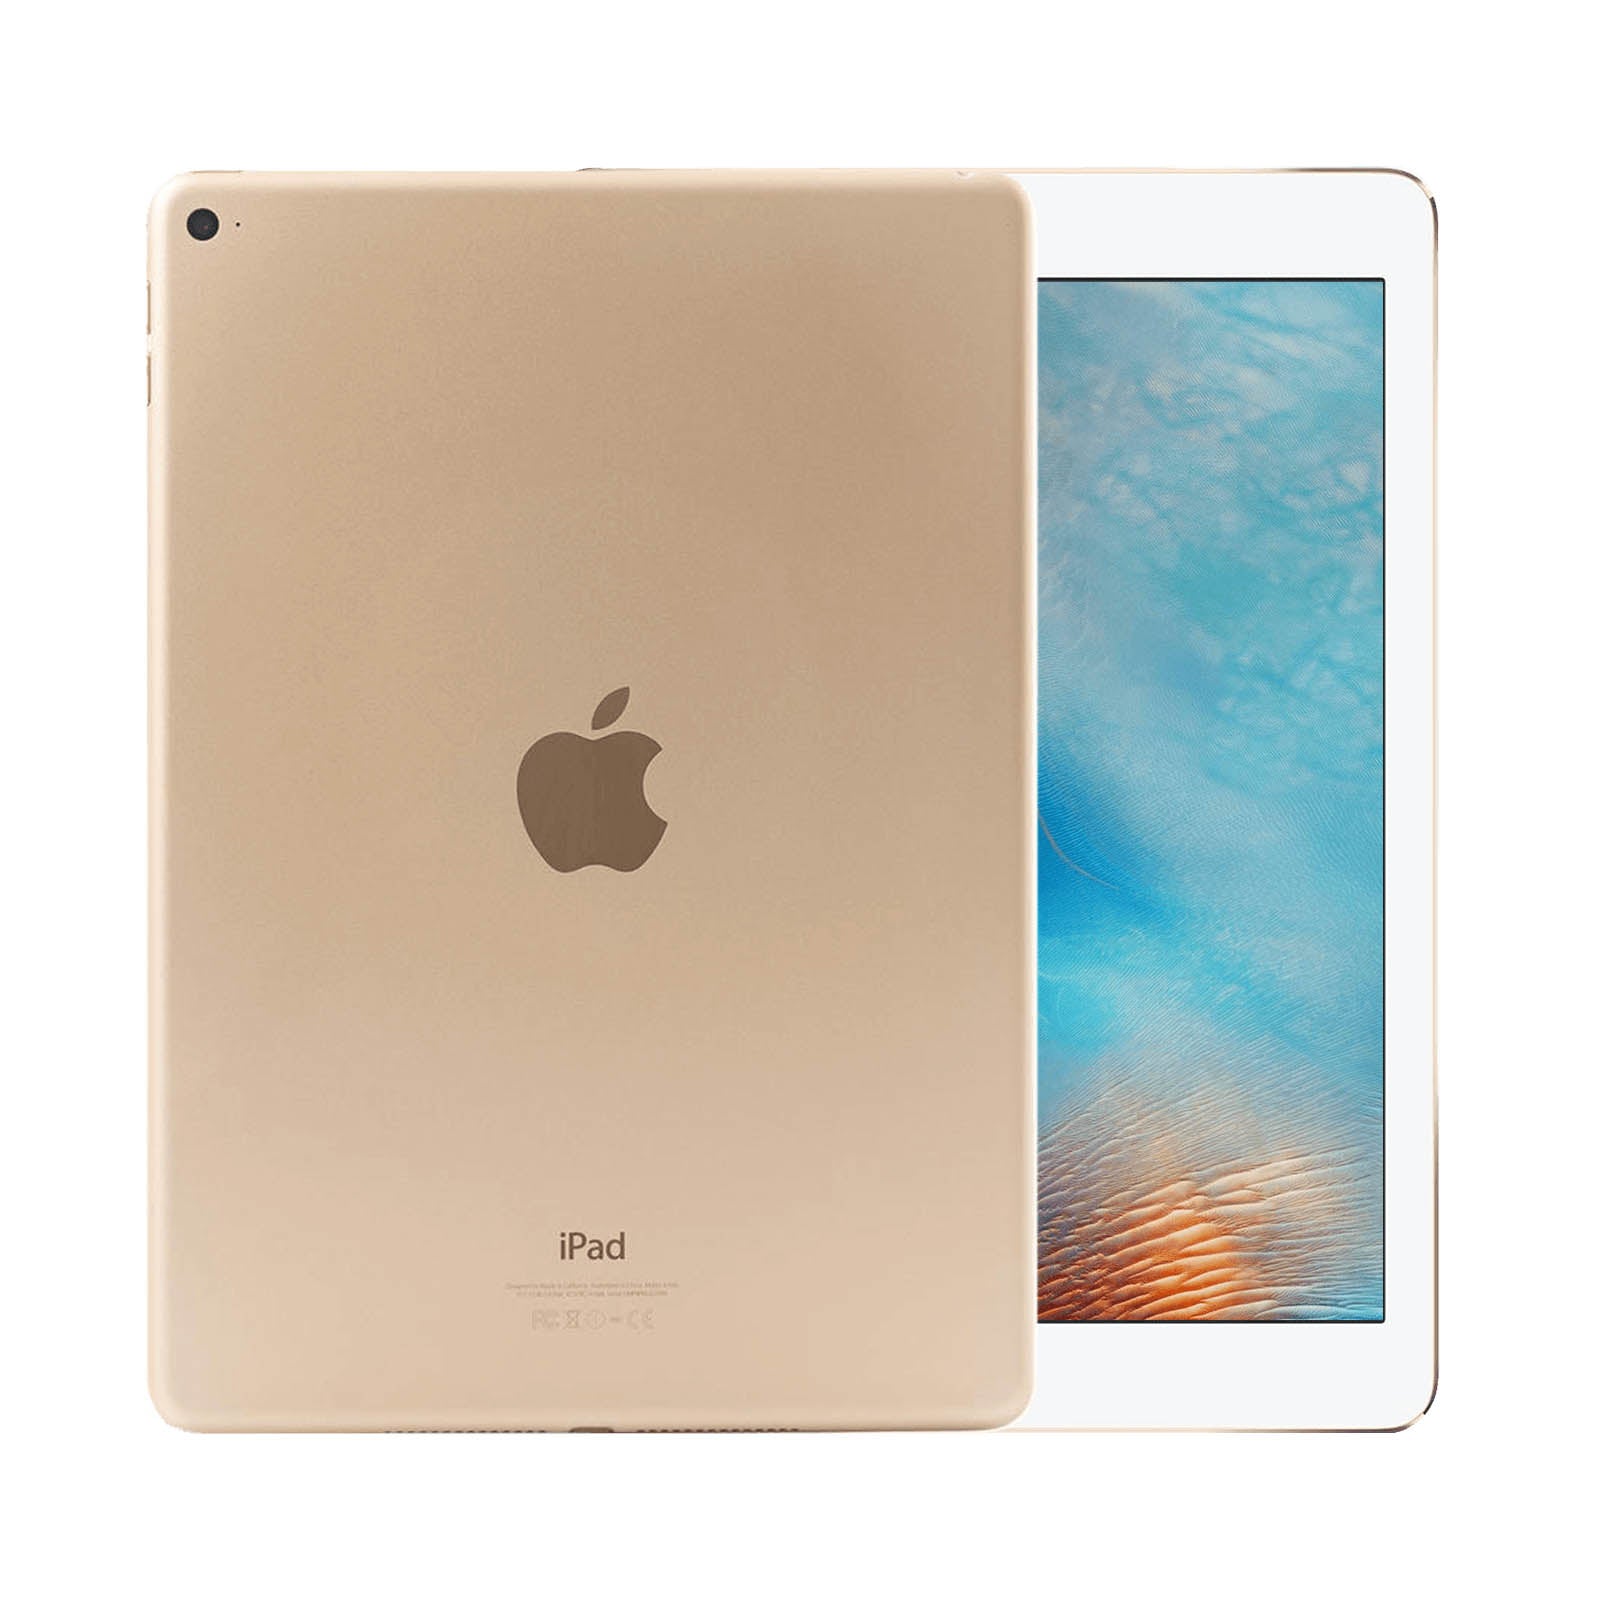 Apple iPad Air 2 32GB Gold Fair - WiFi